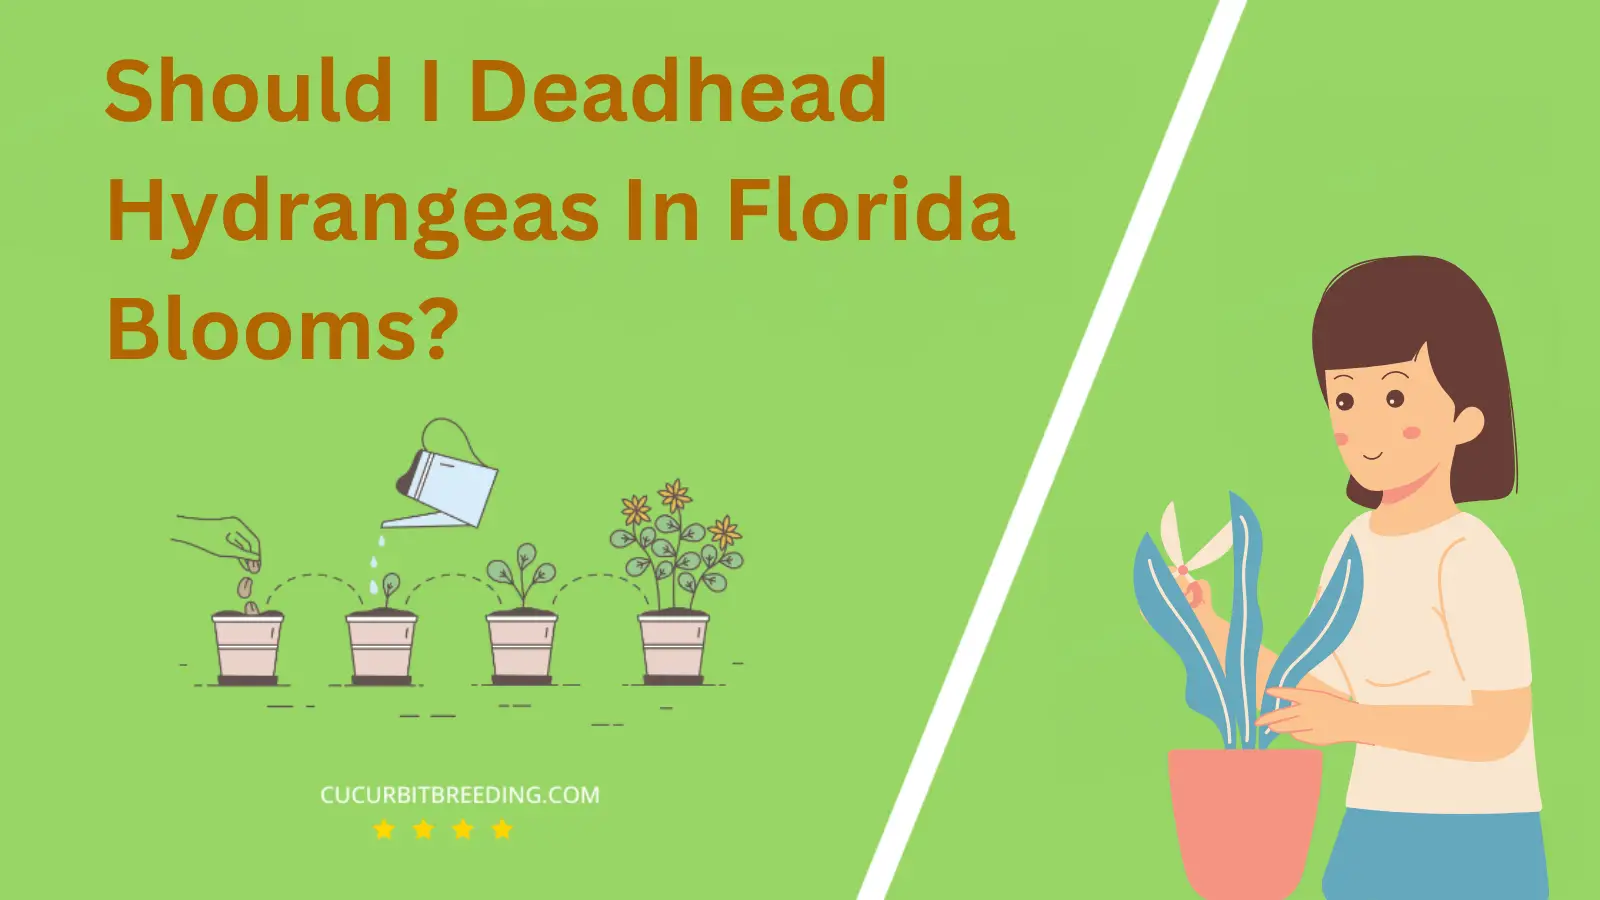 Should I Deadhead Hydrangeas In Florida Blooms?